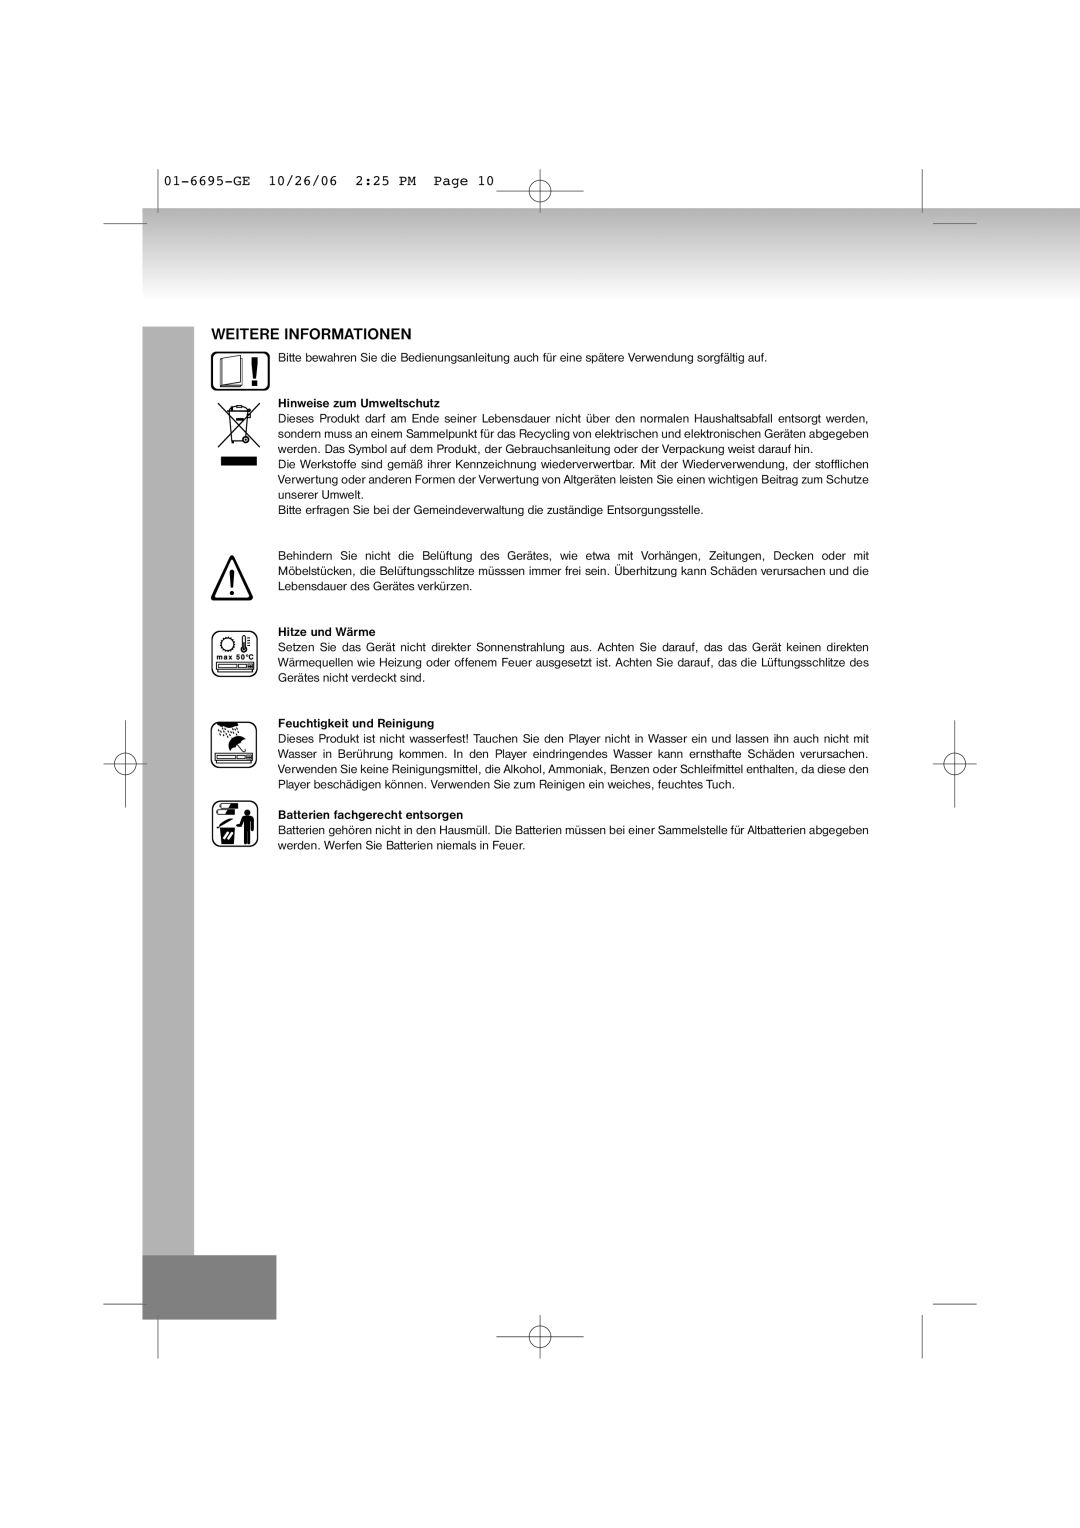 Elta manual Weitere Informationen, 01-6695-GE10/26/06 2 25 PM Page, Hinweise zum Umweltschutz 